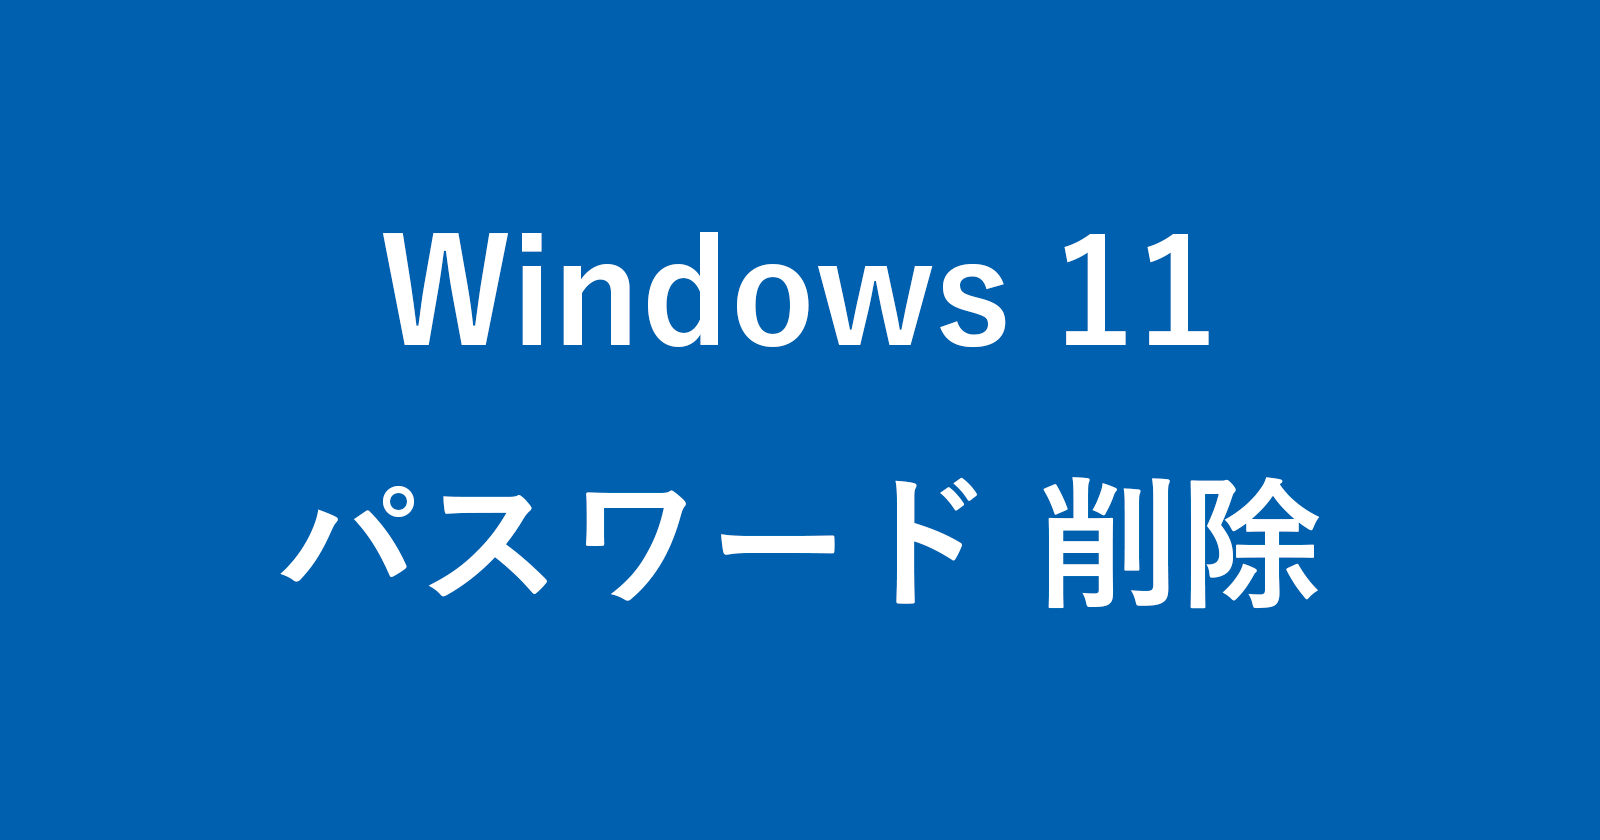 windows 11 remove password